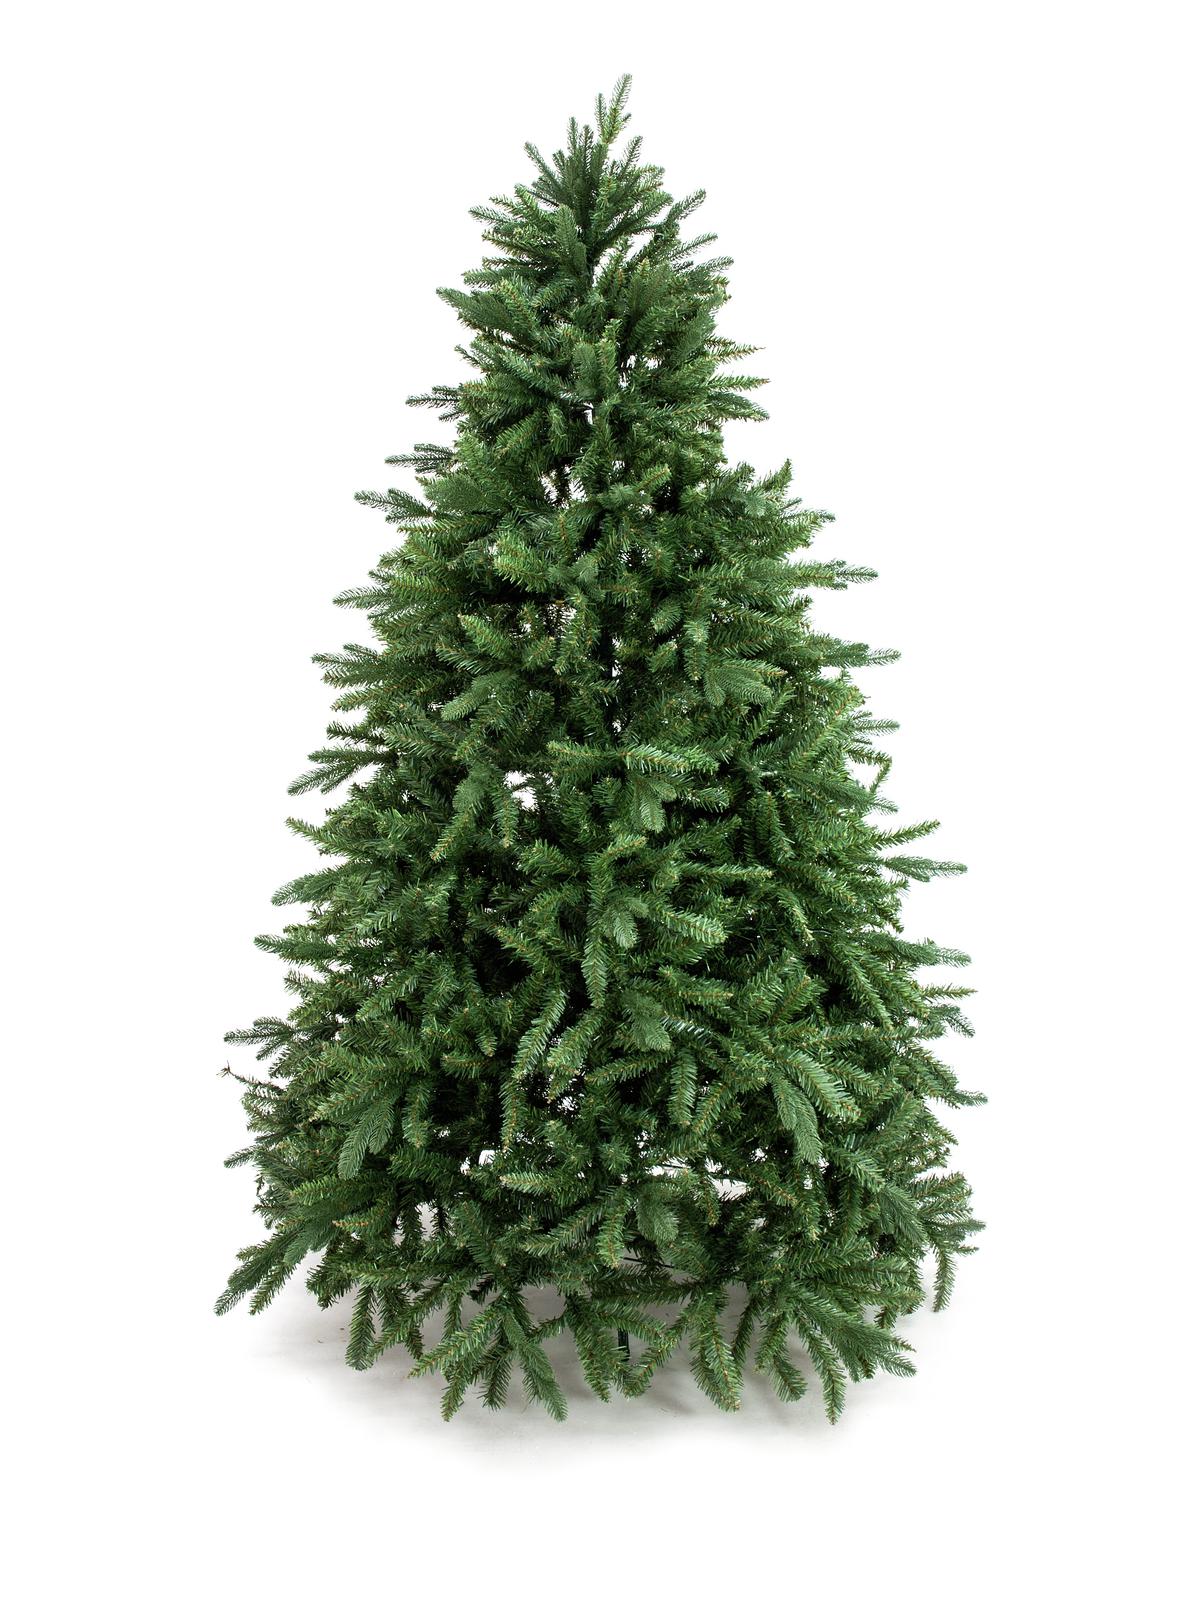 Umělý vánoční stromeček - deluxe jedle, 210 cm